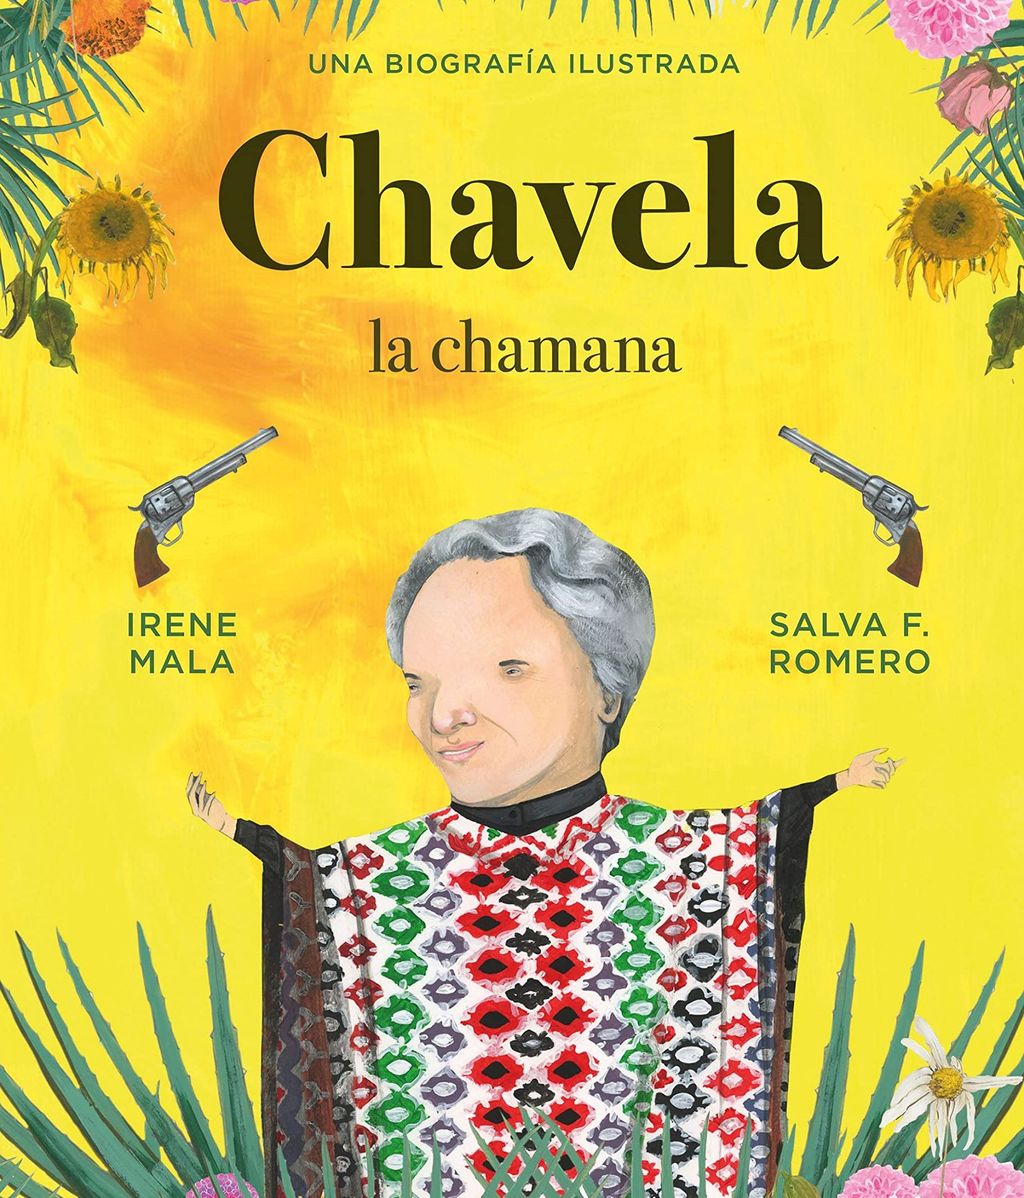 Portada del libro "Chavela, la chamana: Una biografía ilustrada" de Irene Mala y Salva F. Romero